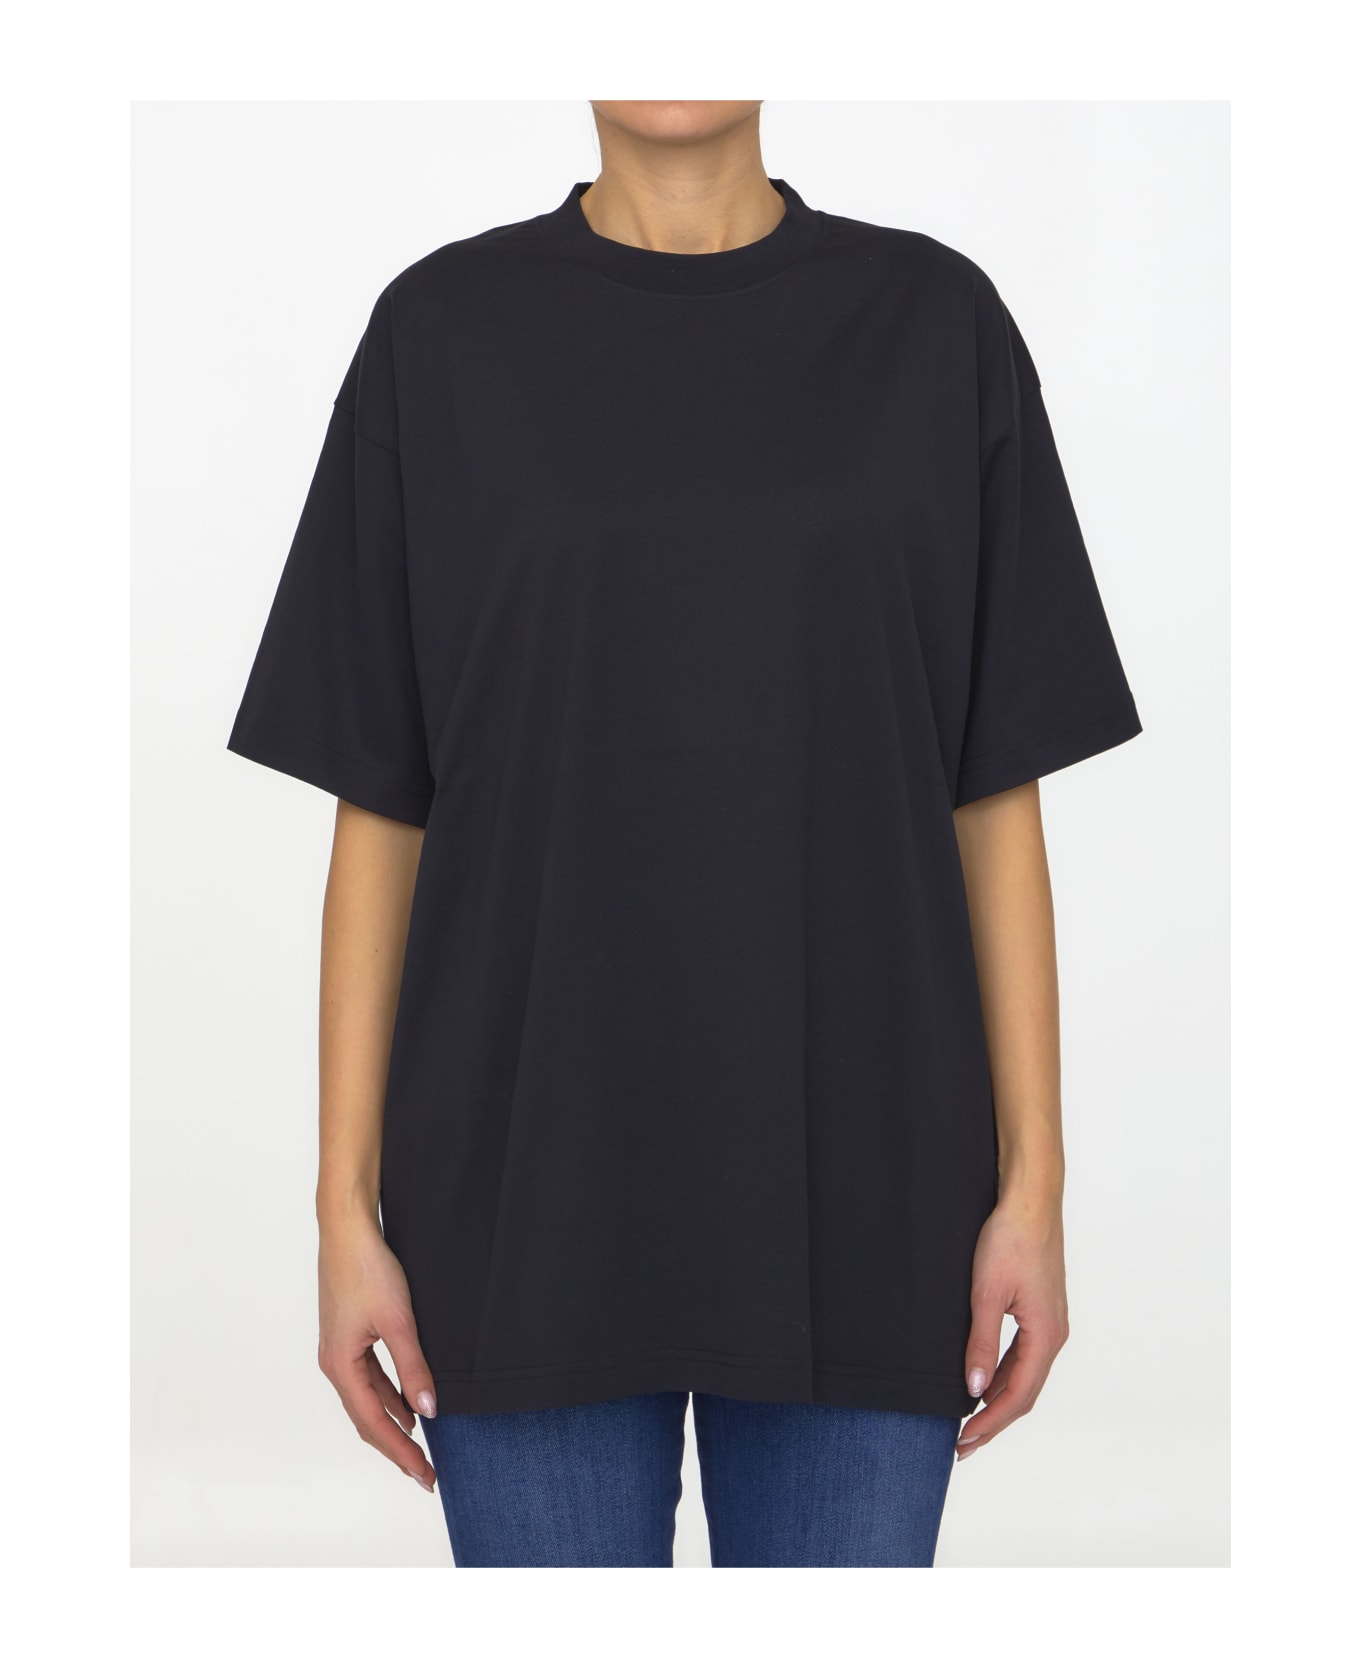 Balenciaga Medium Fit T-shirt - Black/white